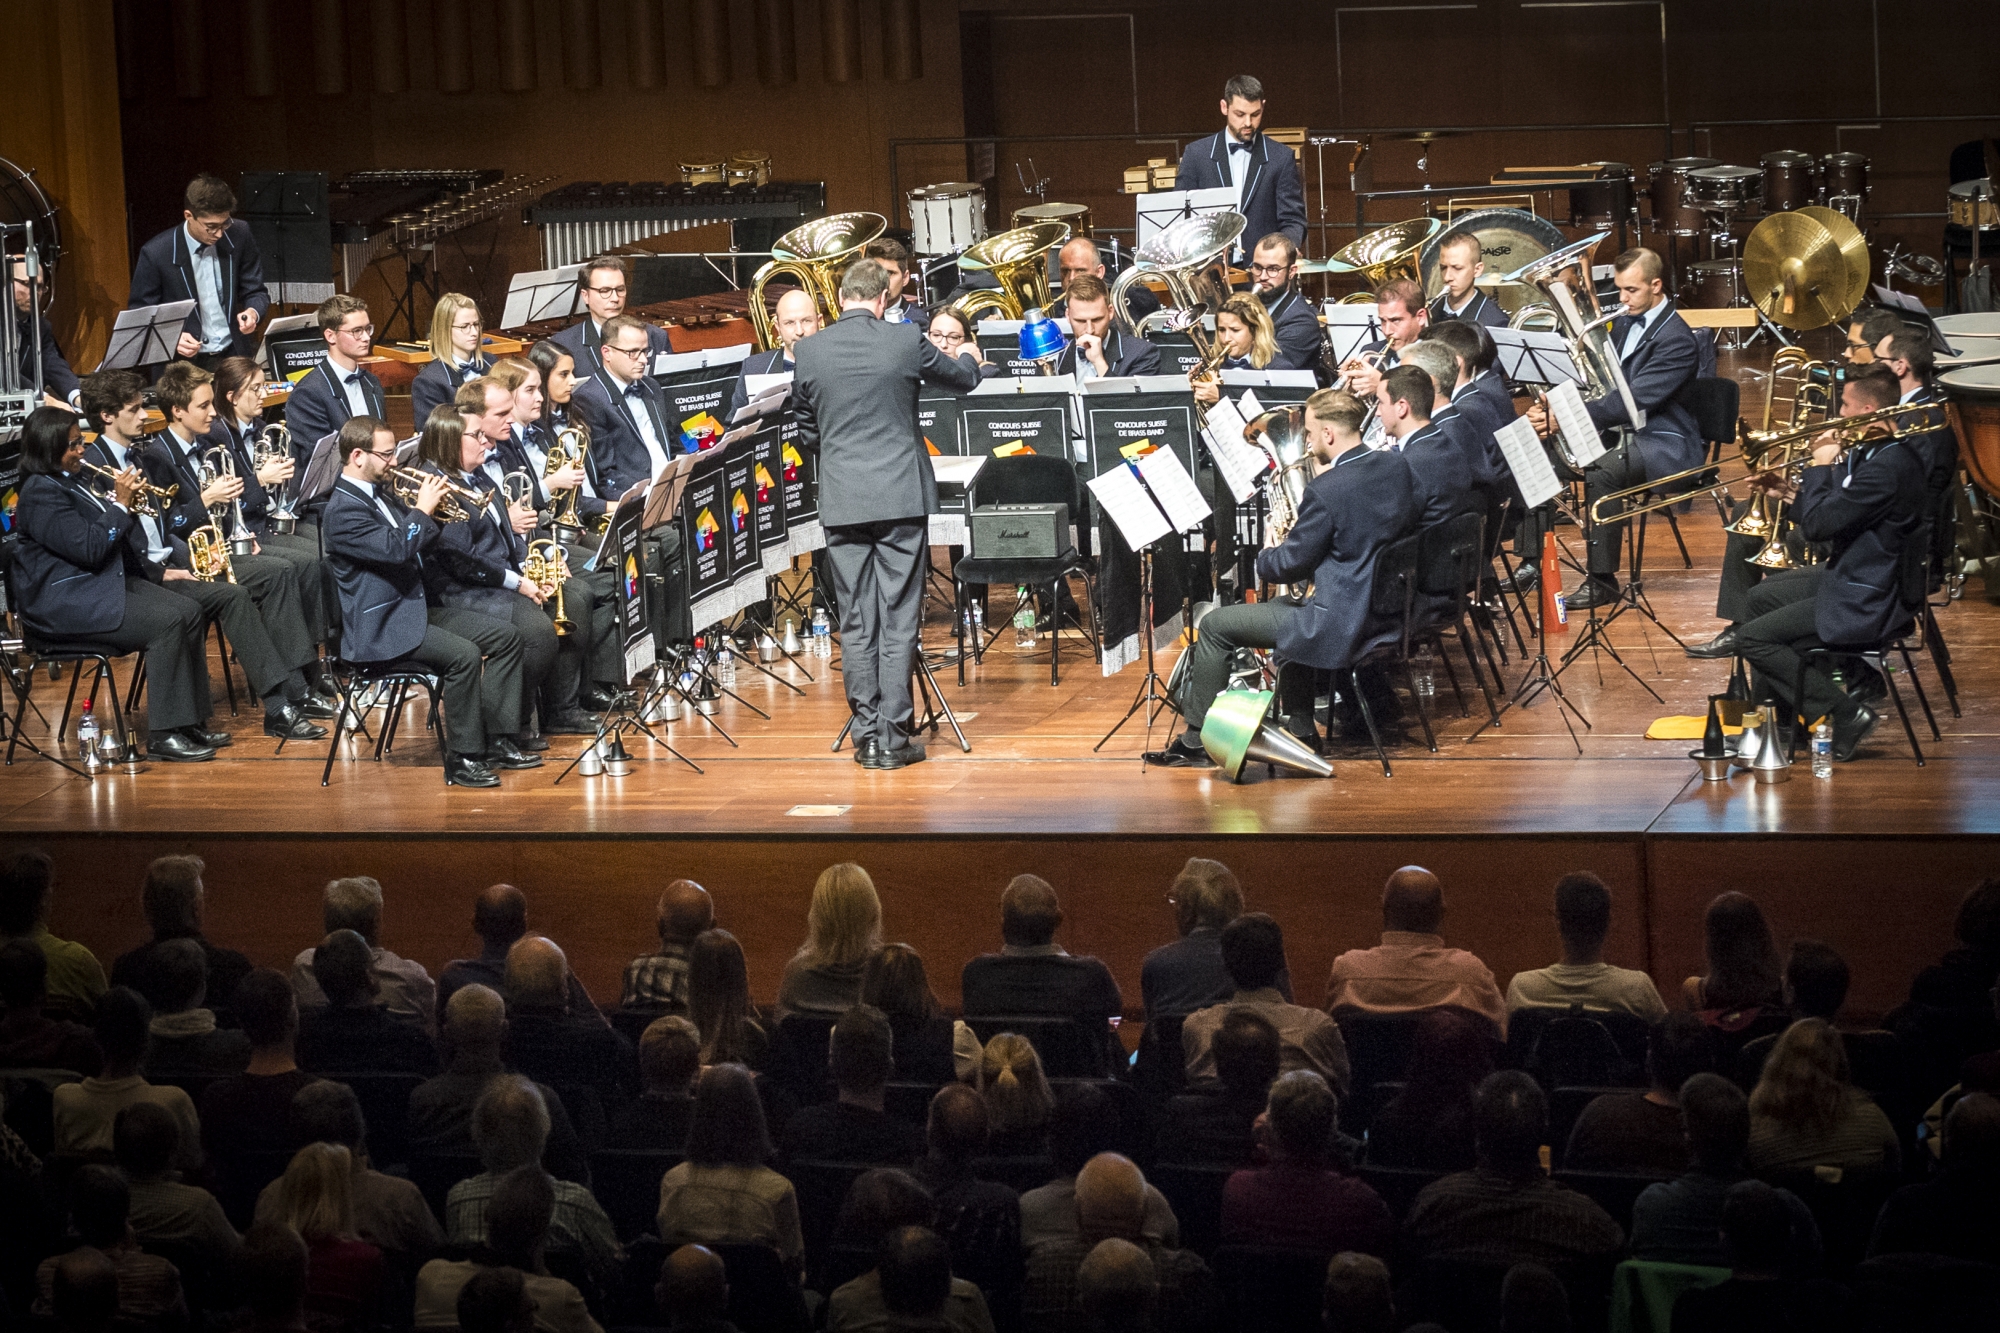 La semaine prochaine, le Valaisia Brass Band défendra son titre européen devant une salle comble, dans l'Auditorium Stravinski à Montreux.